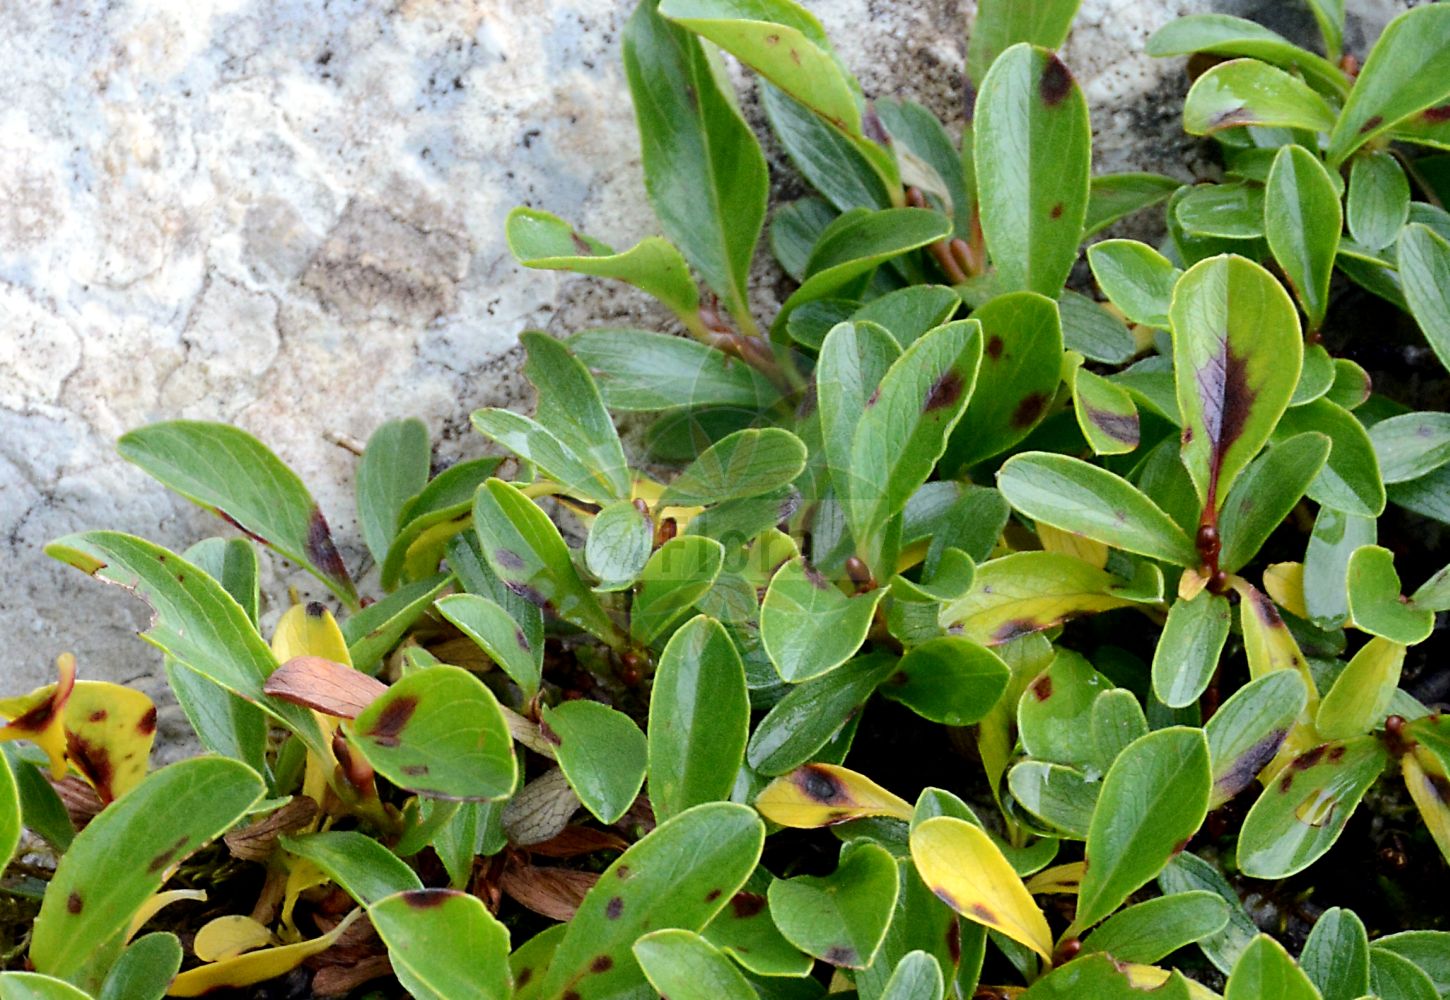 Foto von Salix retusa (Stumpfblättrige Weide - Blunt-leaved Willow). Das Foto wurde in La Rambertina, Waadt, Schweiz aufgenommen. ---- Photo of Salix retusa (Stumpfblättrige Weide - Blunt-leaved Willow). The picture was taken in La Rambertina, Vaud, Switzerland.(Salix retusa,Stumpfblättrige Weide,Blunt-leaved Willow,Salix kitaibeliana,Salix retusa,Salix retusa subsp. eu-retusa,,Stumpfblaettrige Weide,Gestutzte Weide,Blunt-leaved Willow,Salix,Weide,Osier,Salicaceae,Weidengewächse,Willow family)